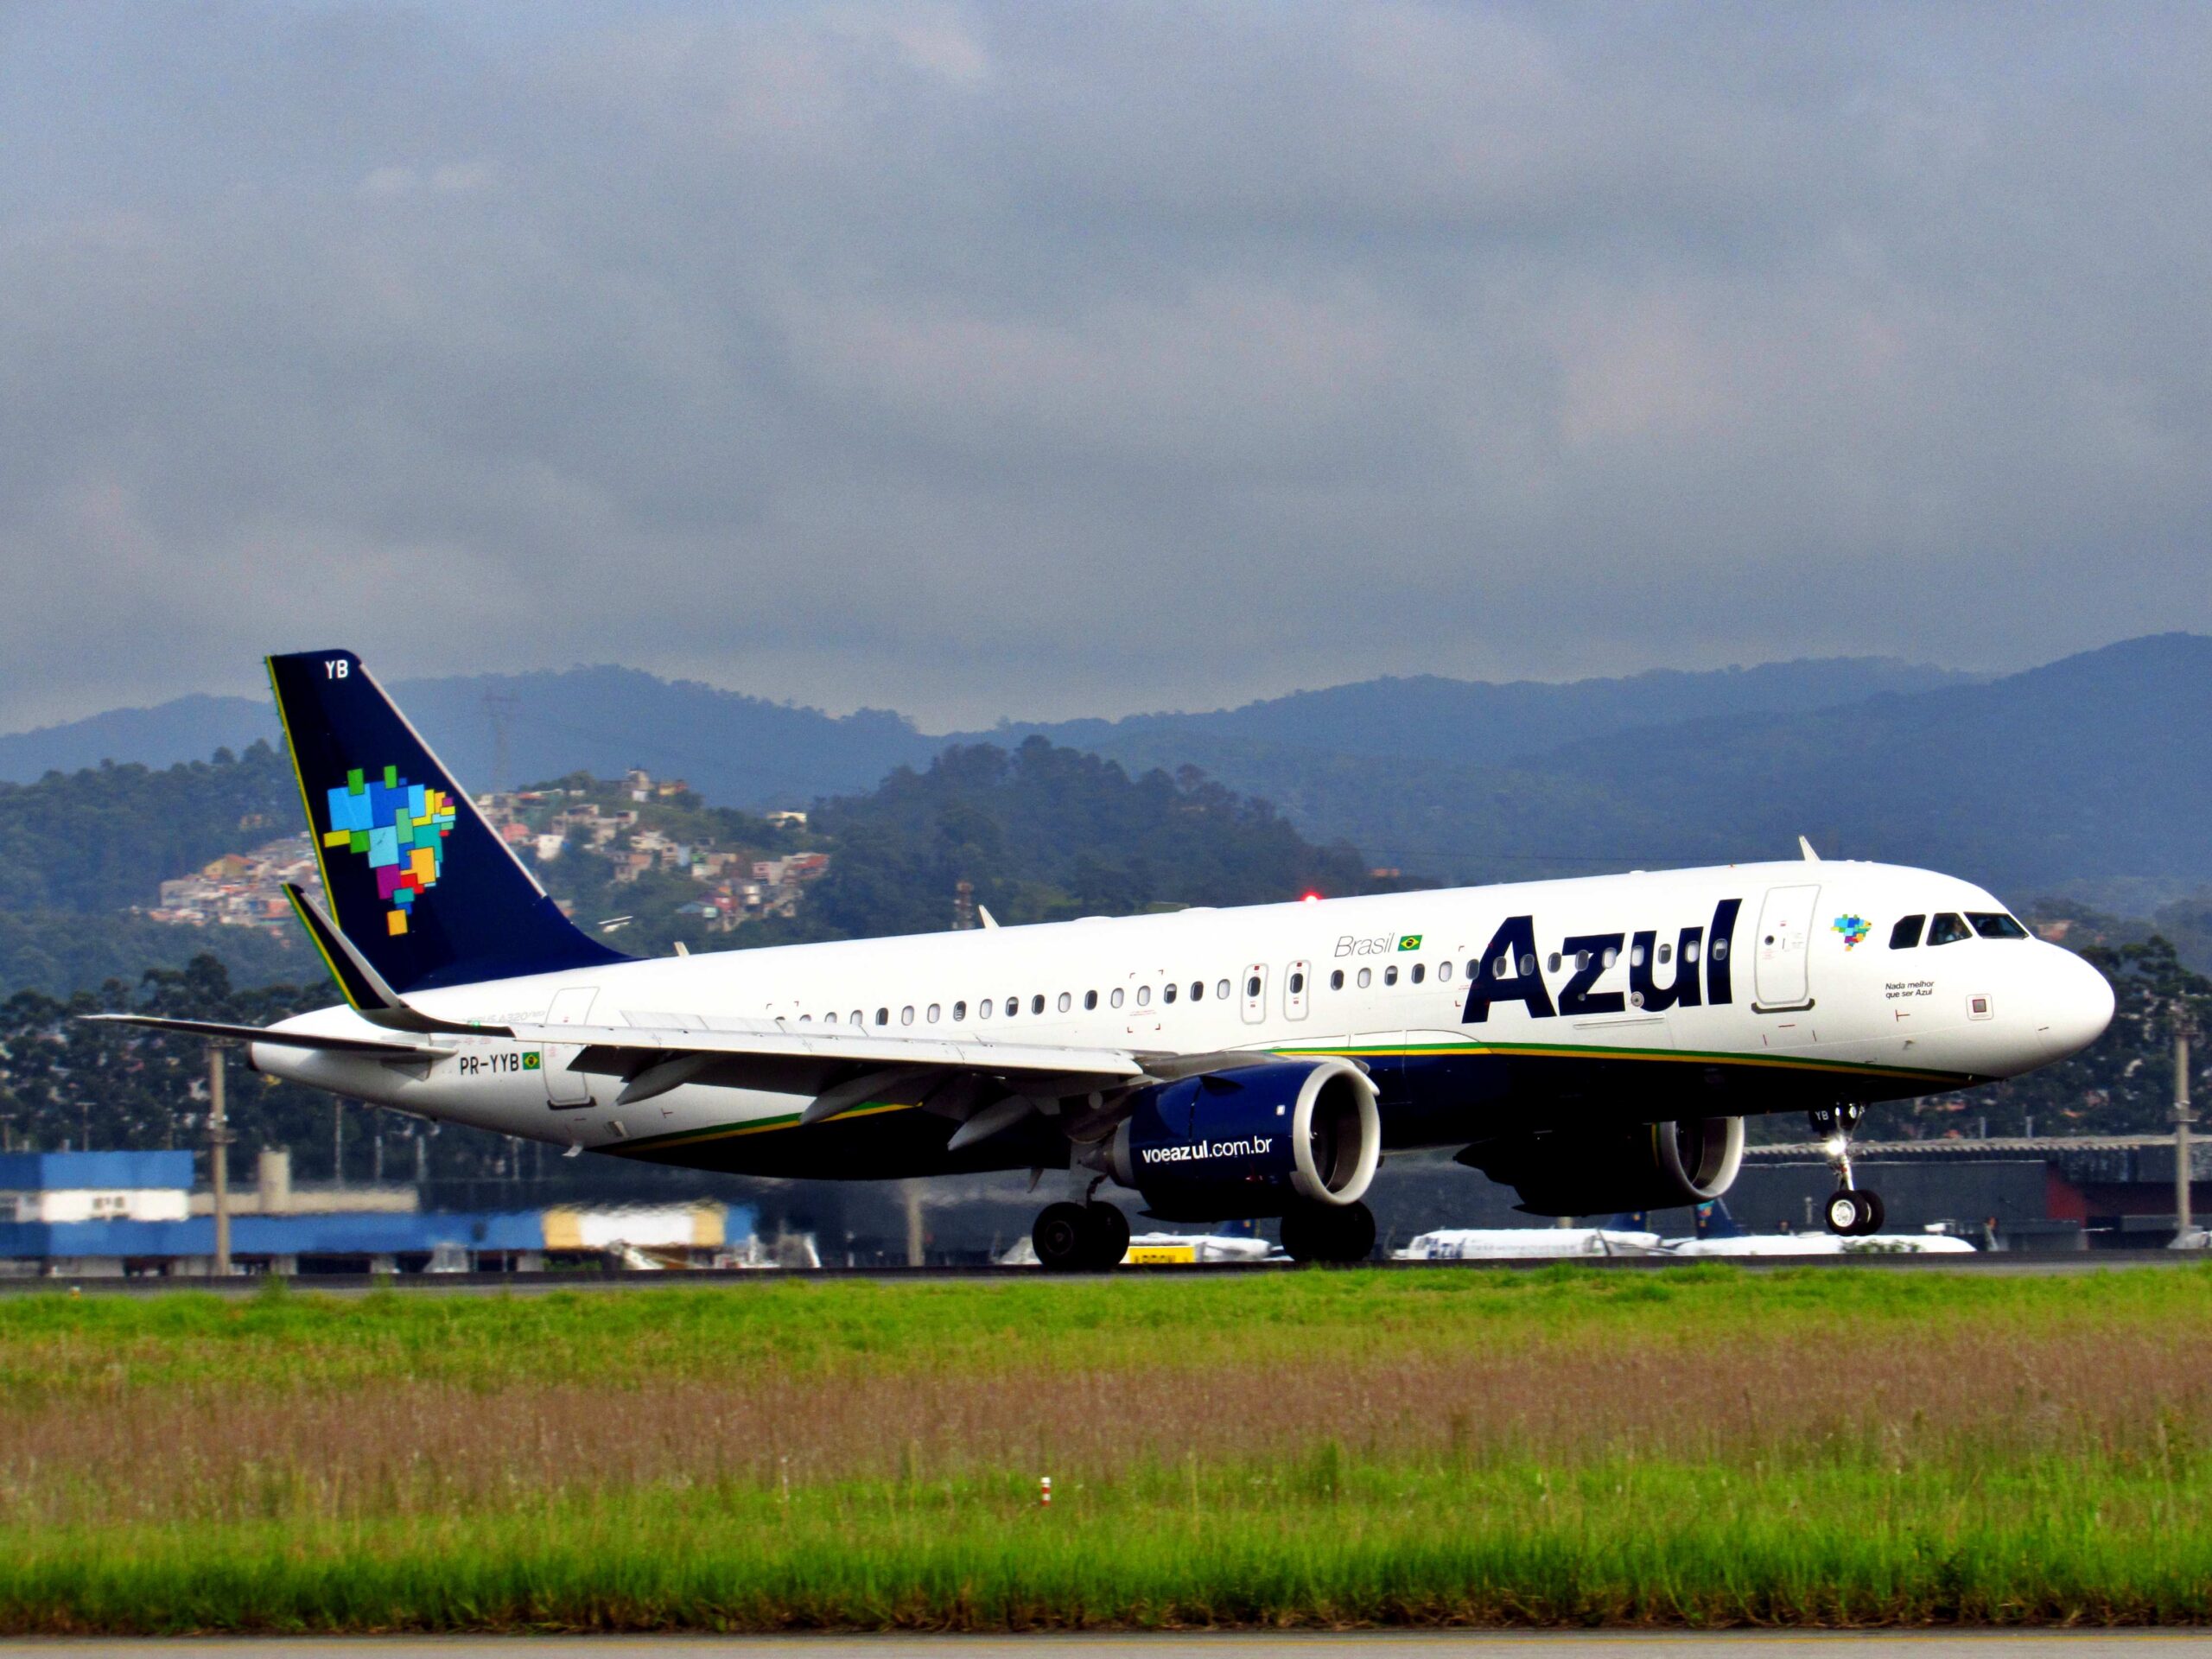 O MAIOR AVIÃO DA AZUL - A330-900NEO - POUSO E DECOLAGEM NO AEROPORTO  INTERNACIONAL DE VIRACOPOS 